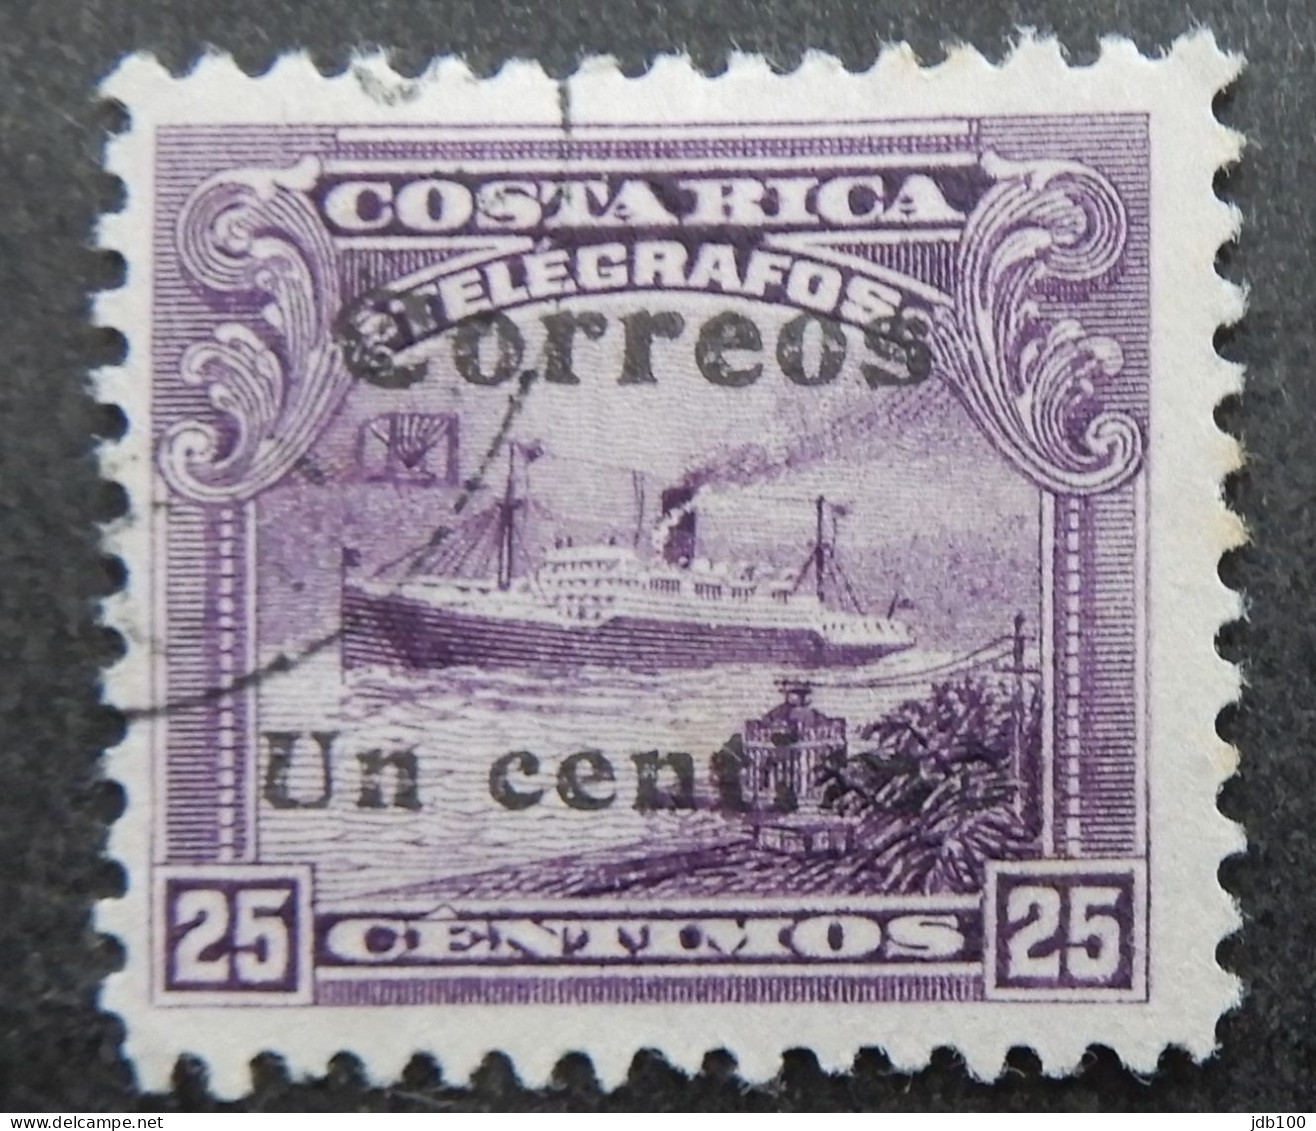 Costa Rica 1911 (5a) Telegrafos Surcharded Un Centimo - Costa Rica